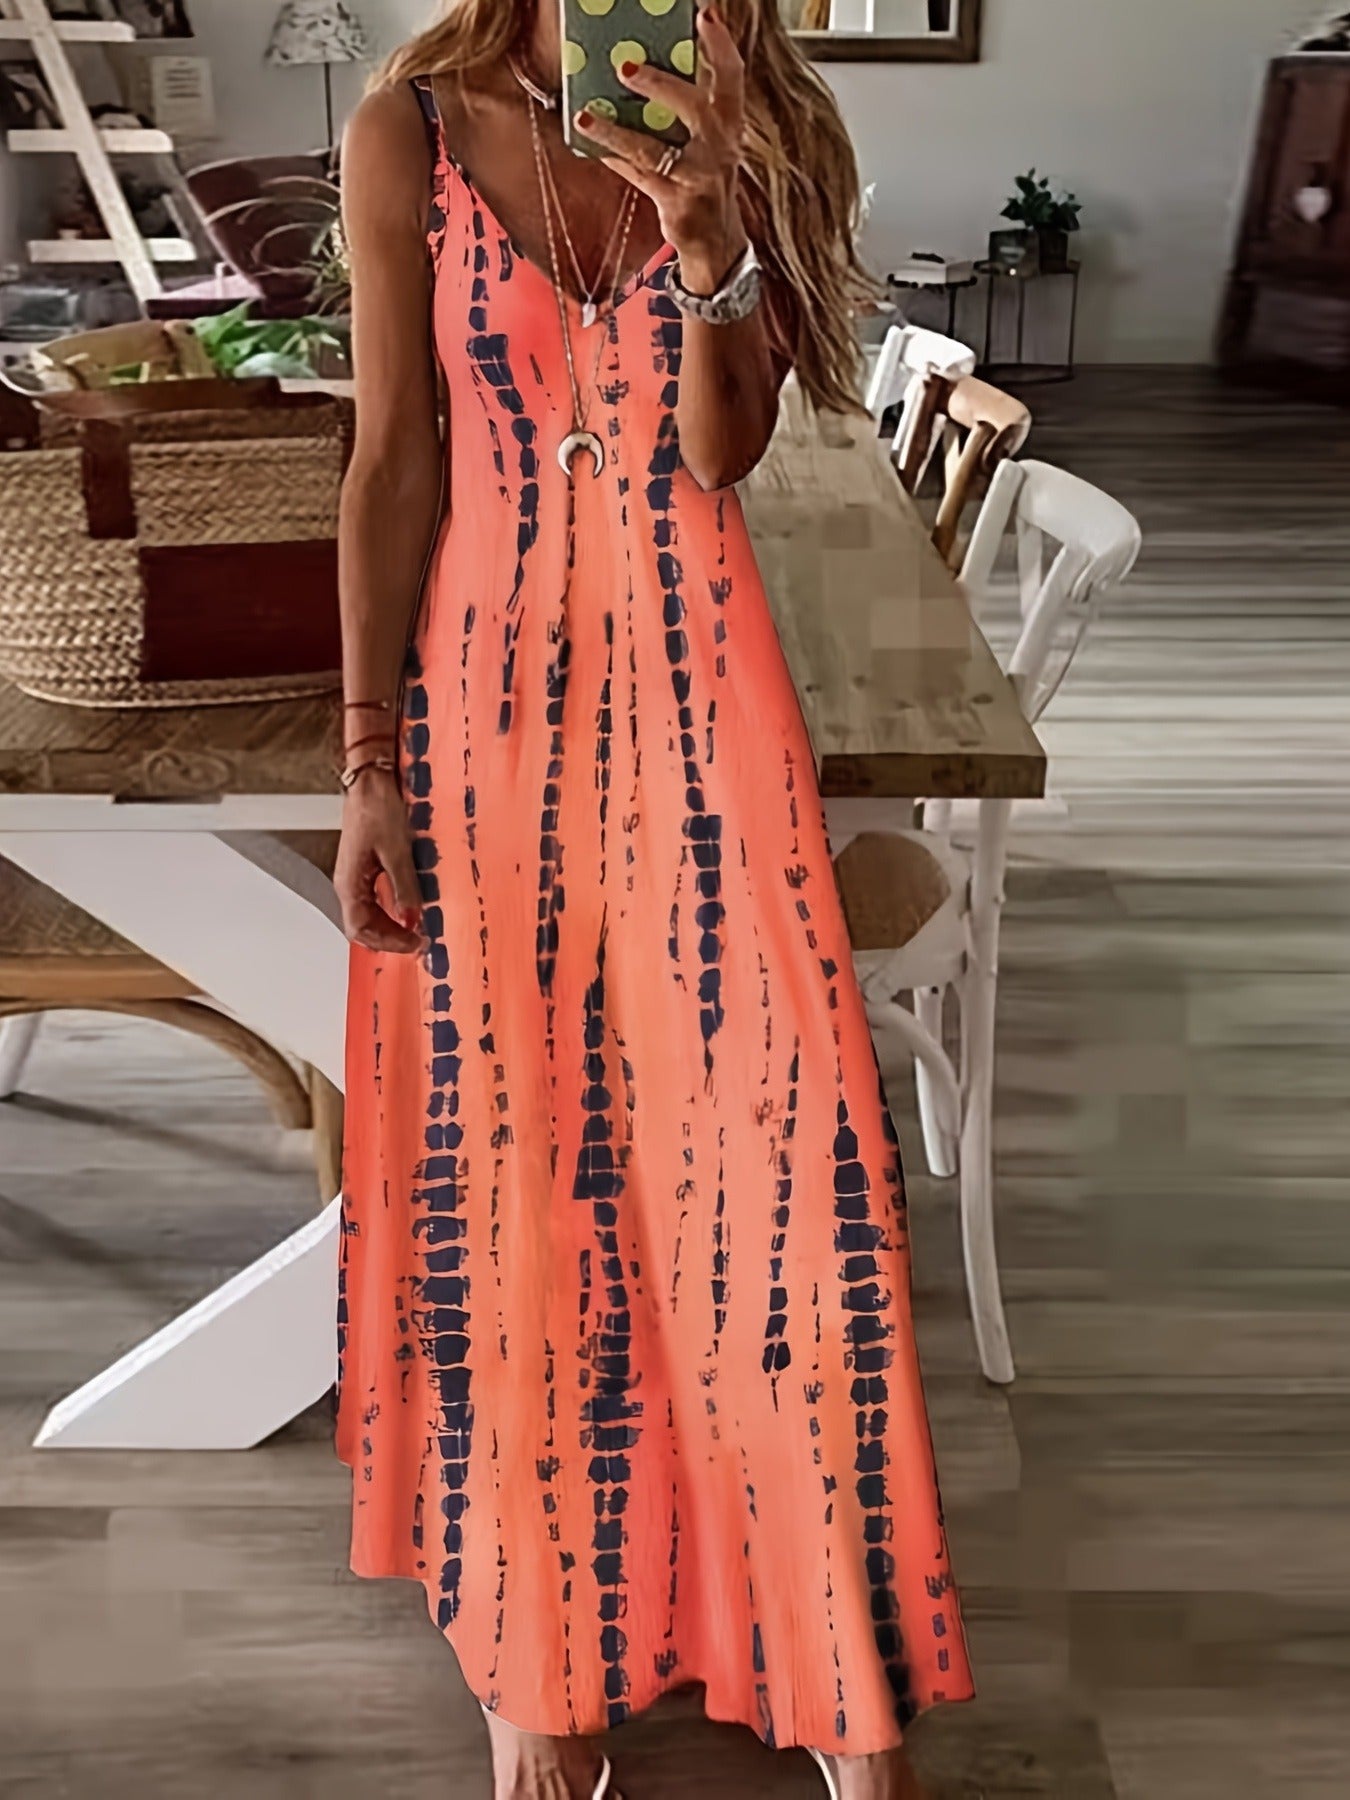 Vorioal Orange Print Dress